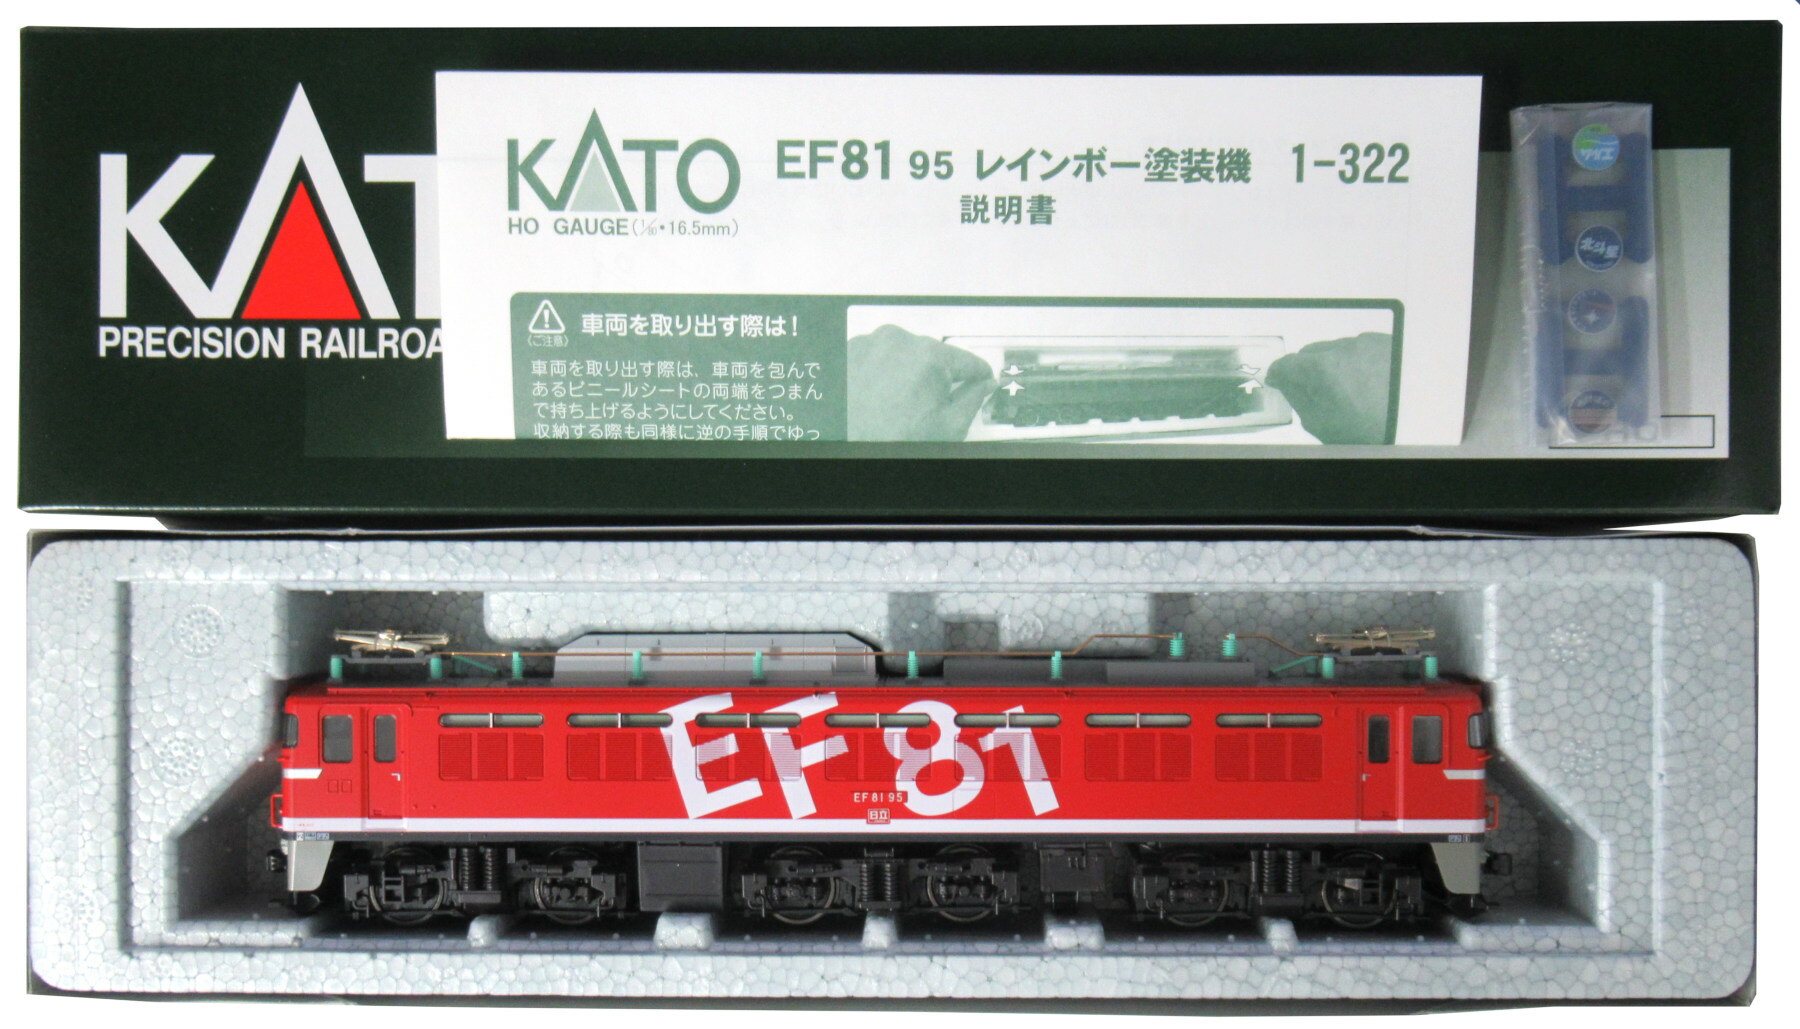 【中古】HOゲージ KATO(カトー) 1-322 EF81 95 レインボー塗装機 【A】